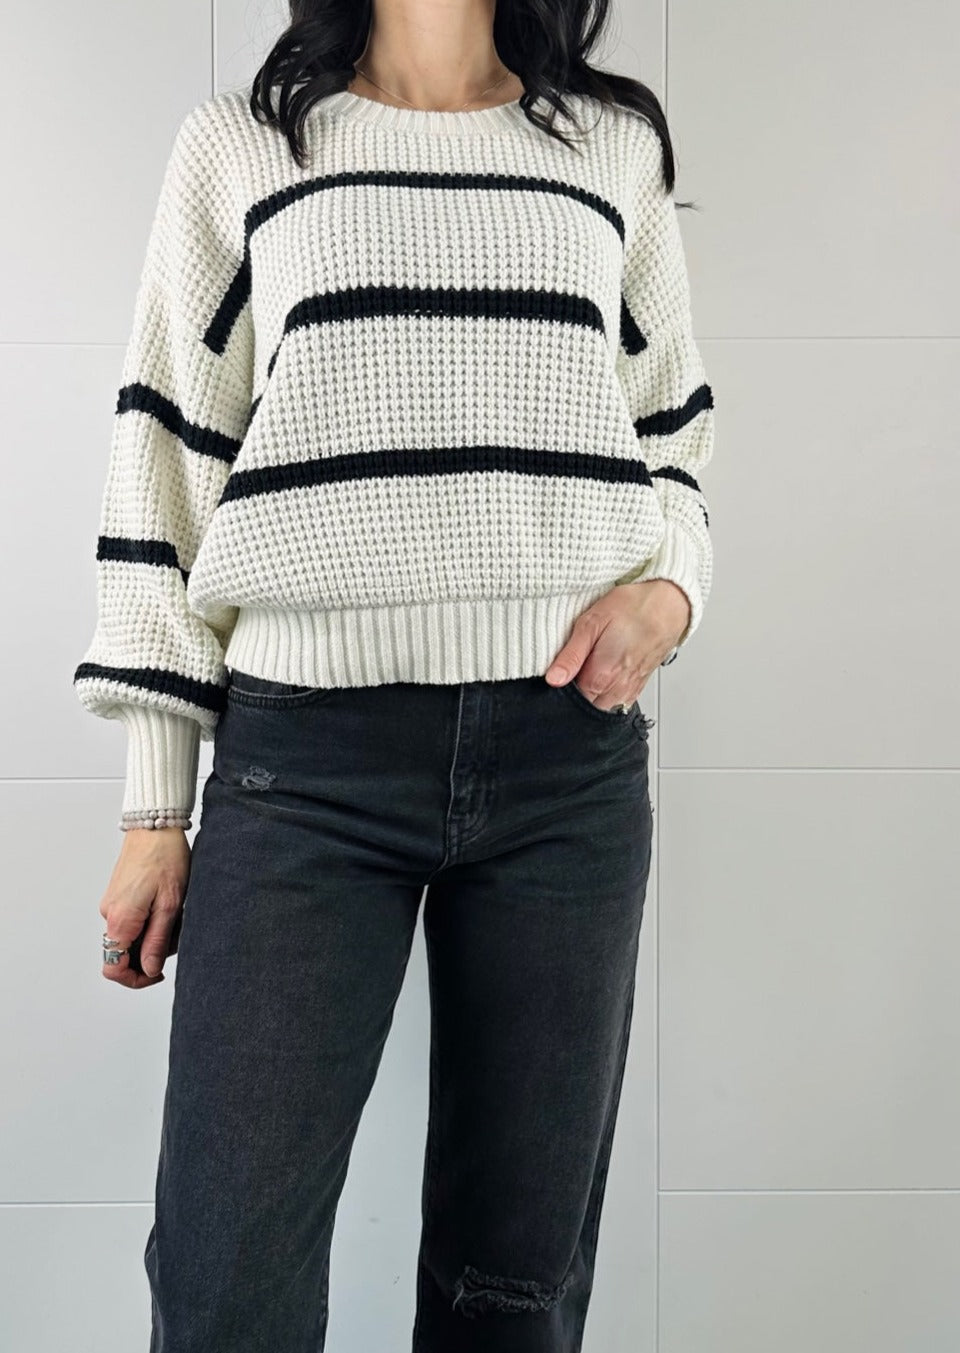 Sweaters & Sweatshirts For Women | Tia B Boutique <!---->